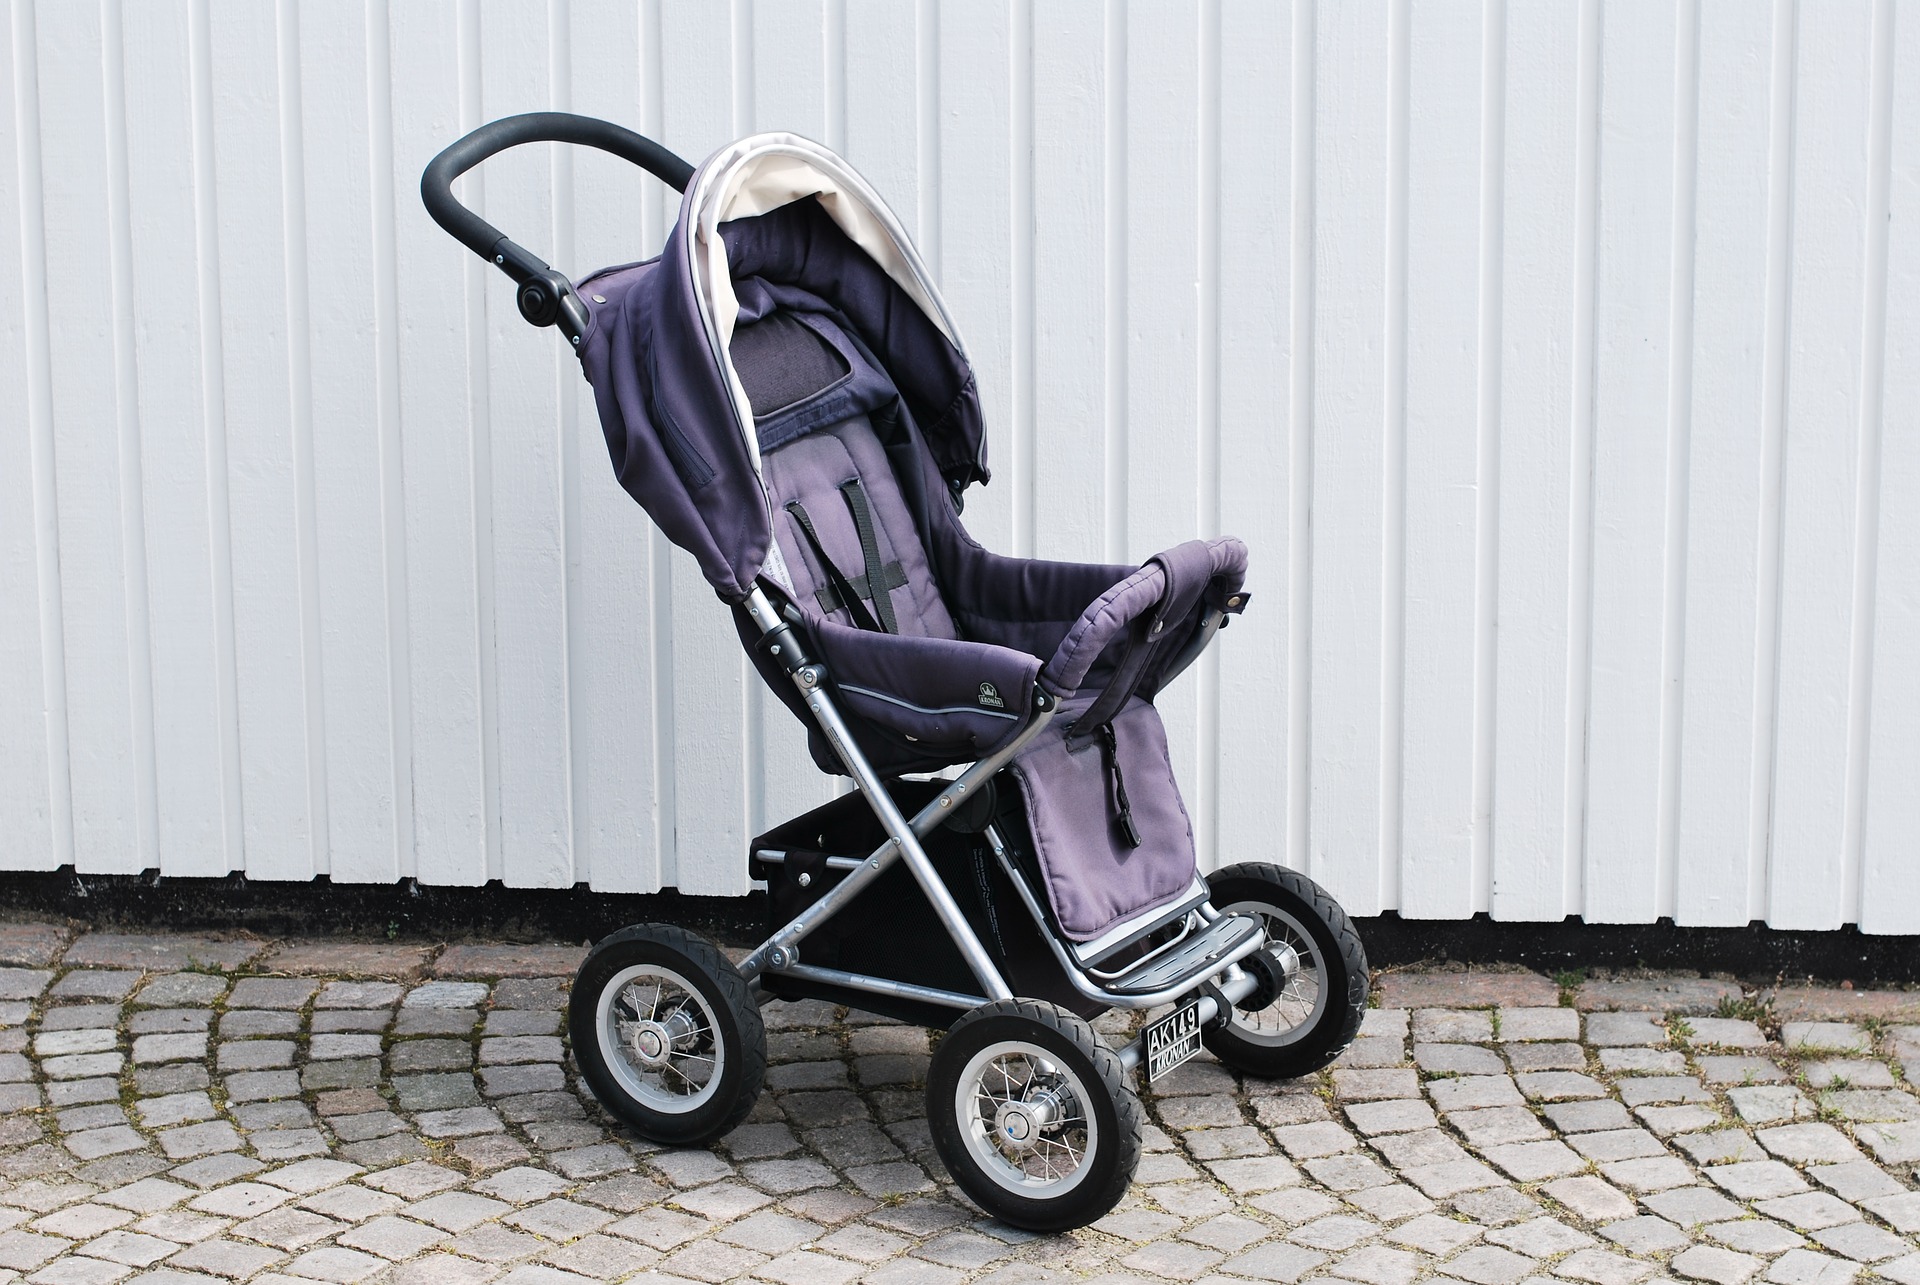 Carrinhos de bebê e cadeiras para usar no carro também são encontrados nos brechós. Foto: Pixabay